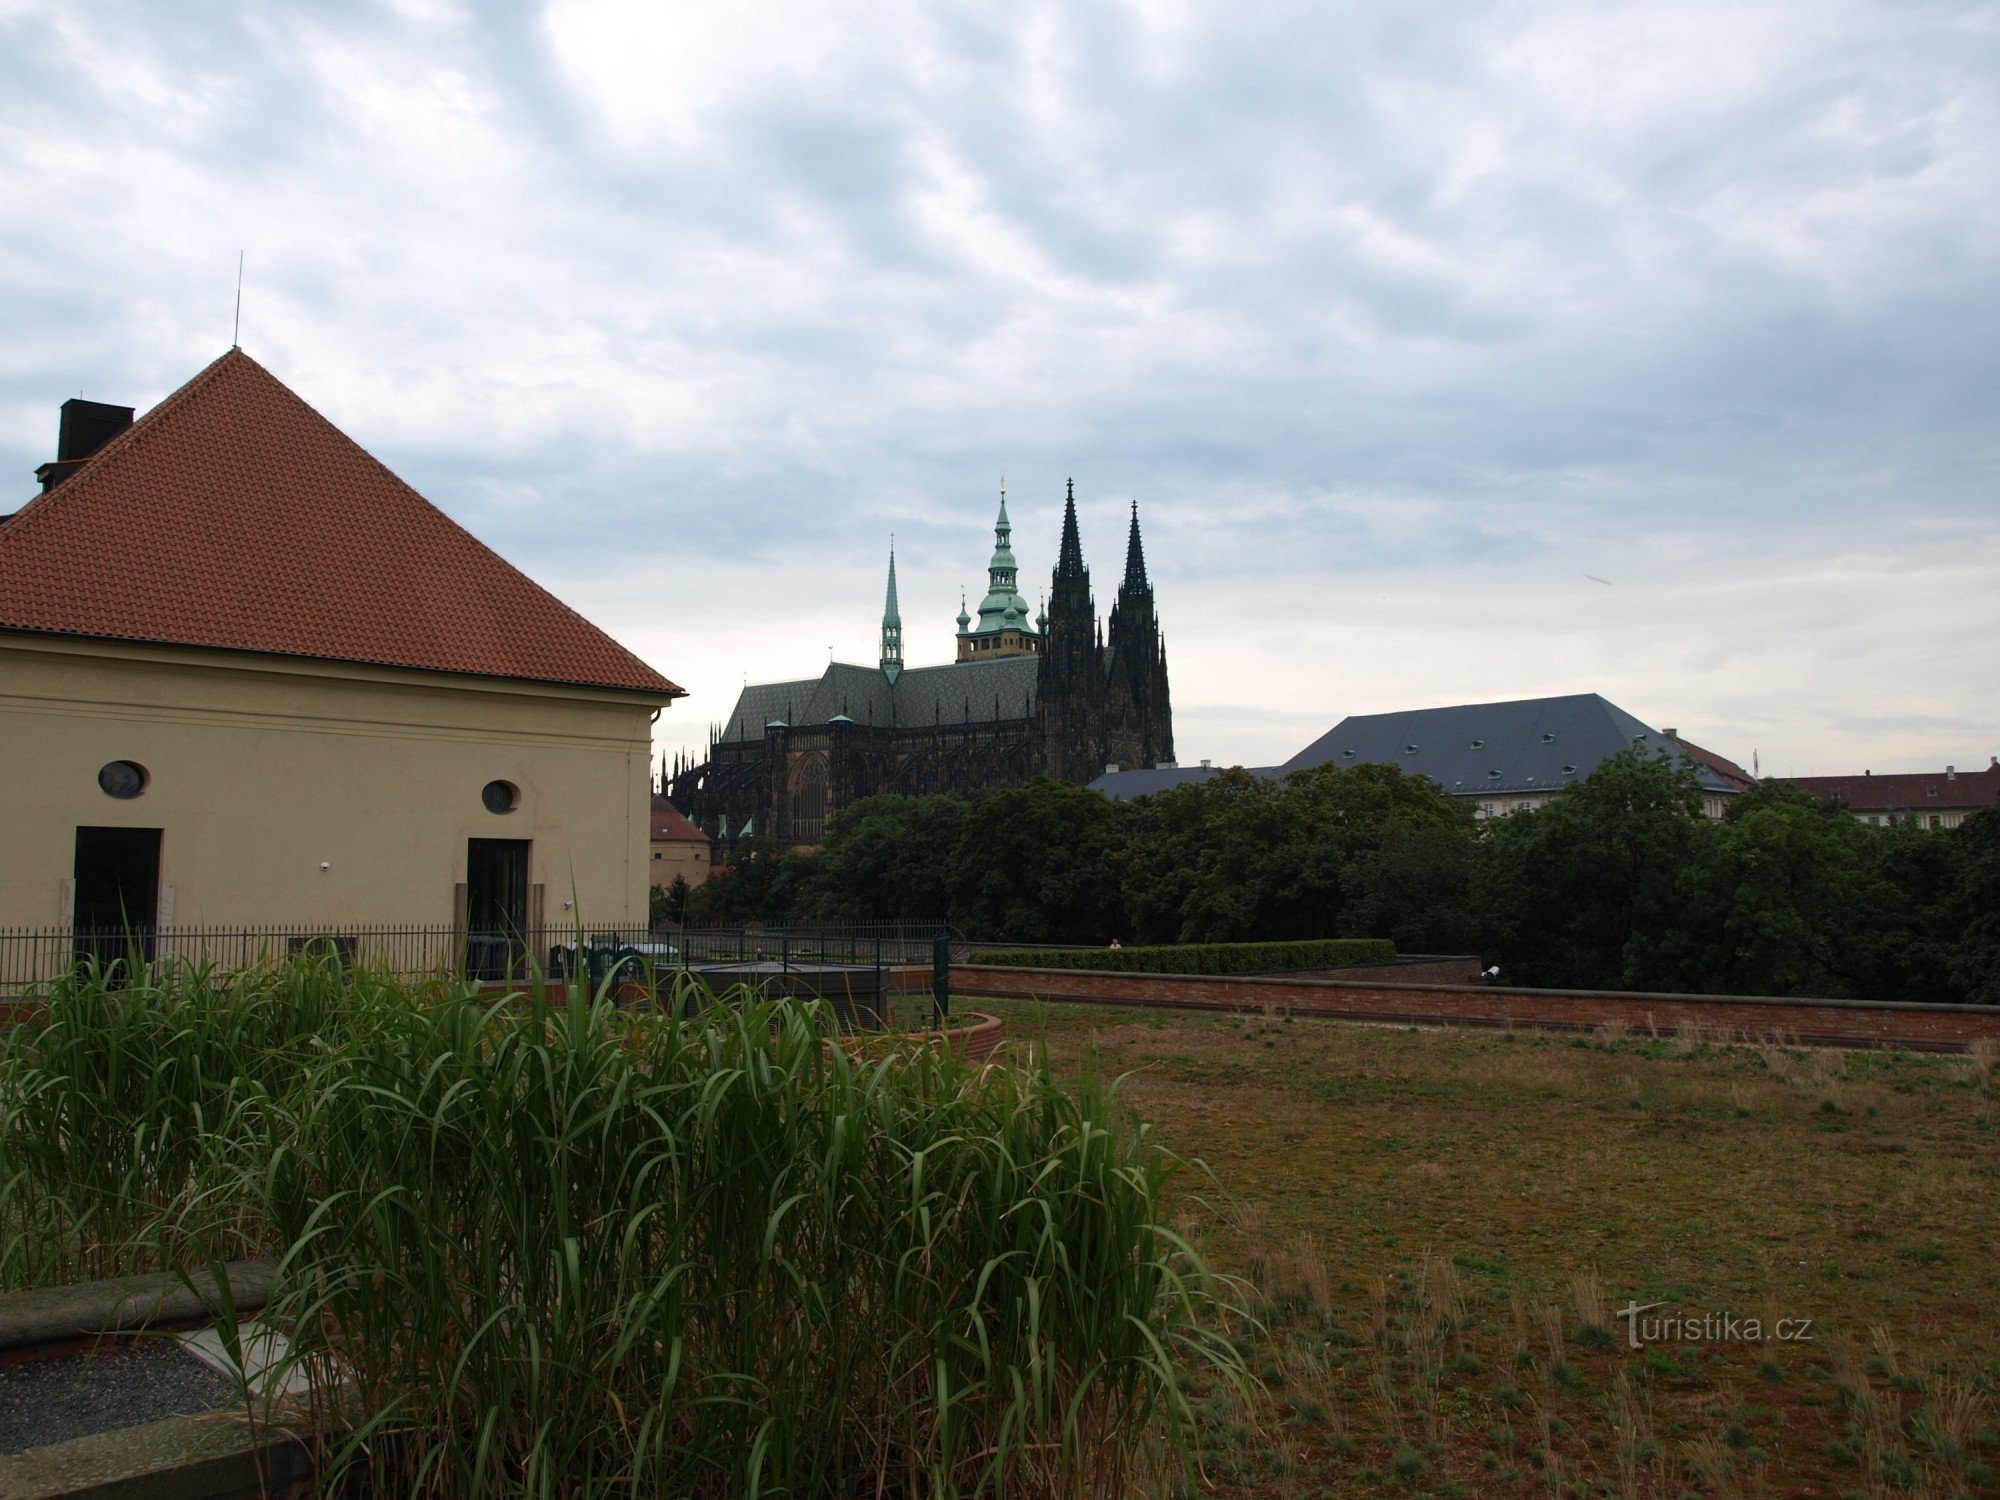 Jardines de producción del Castillo de Praga